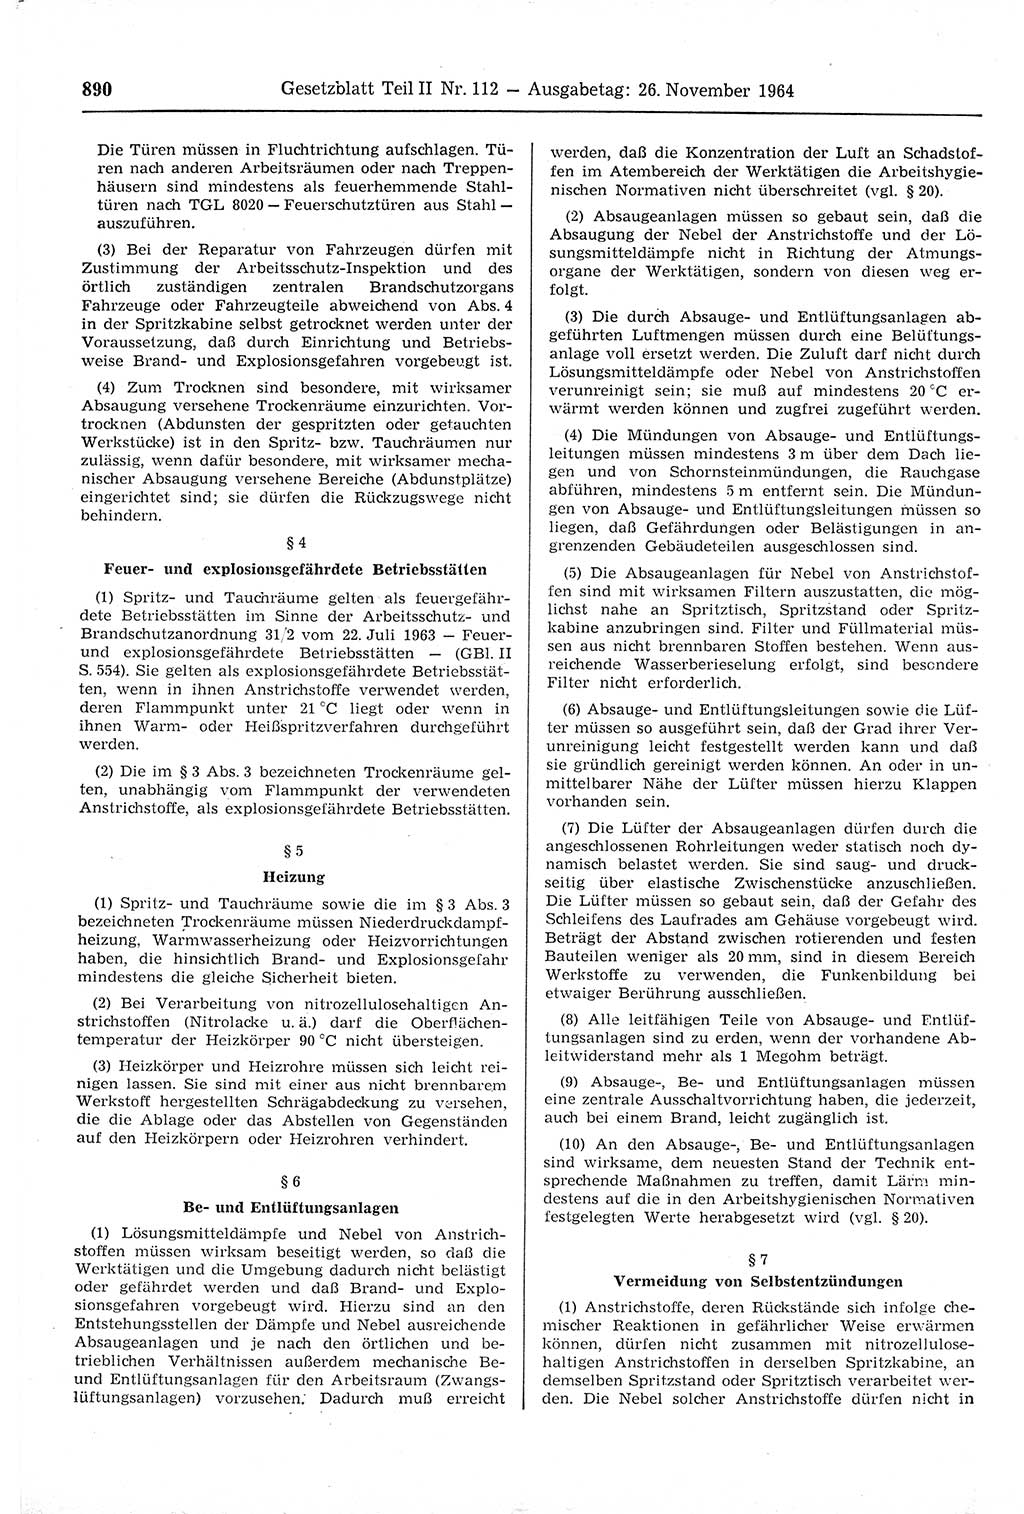 Gesetzblatt (GBl.) der Deutschen Demokratischen Republik (DDR) Teil ⅠⅠ 1964, Seite 890 (GBl. DDR ⅠⅠ 1964, S. 890)